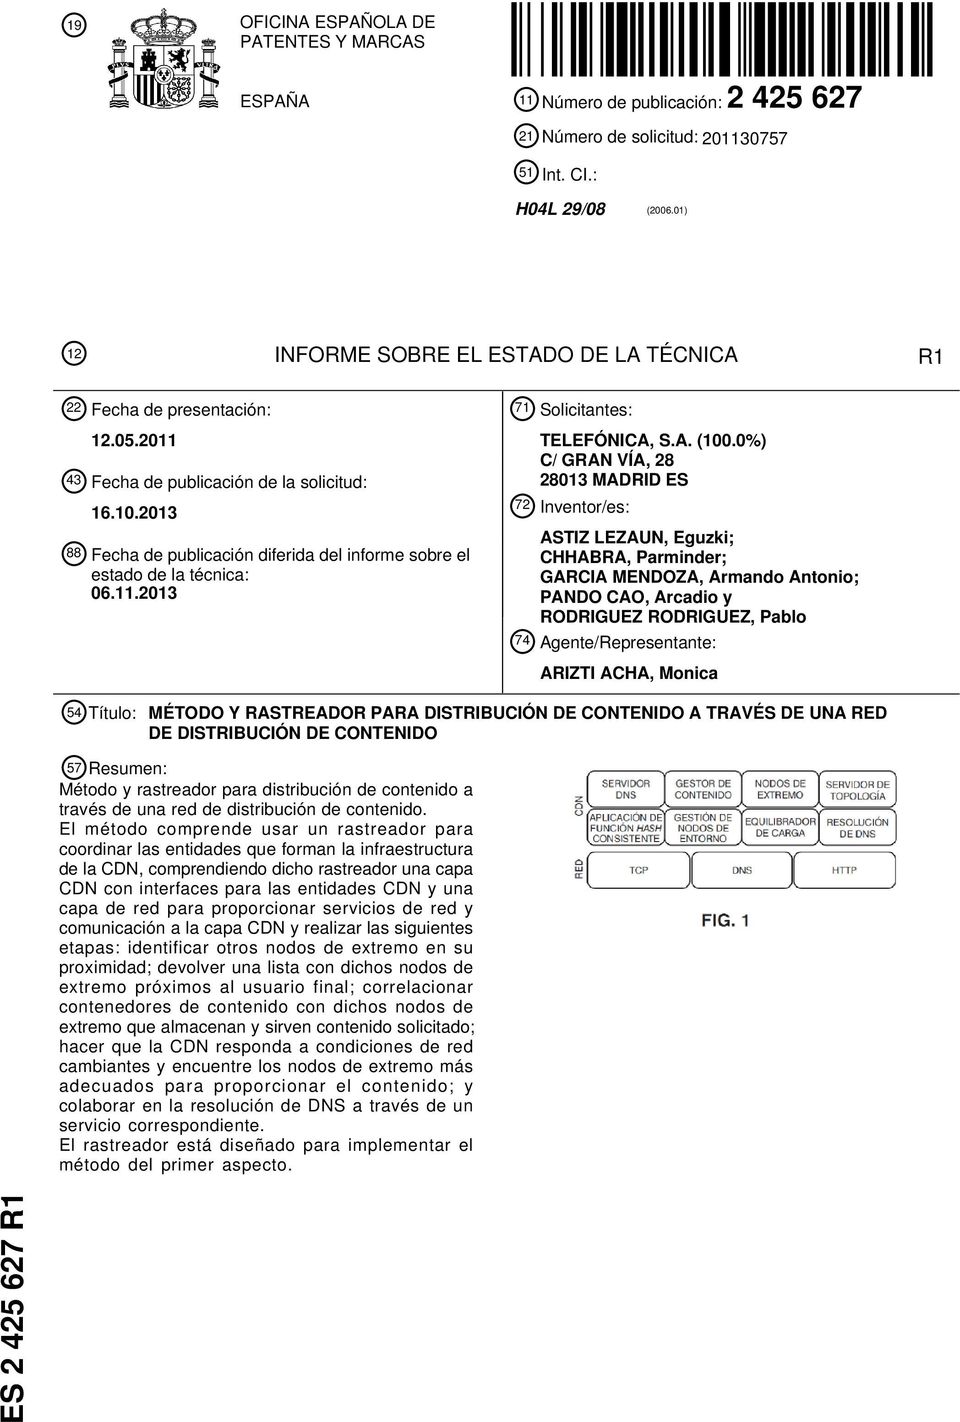 2013 88 Fecha de publicación diferida del informe sobre el estado de la técnica: 06.11.2013 71 Solicitantes: TELEFÓNICA, S.A. (100.